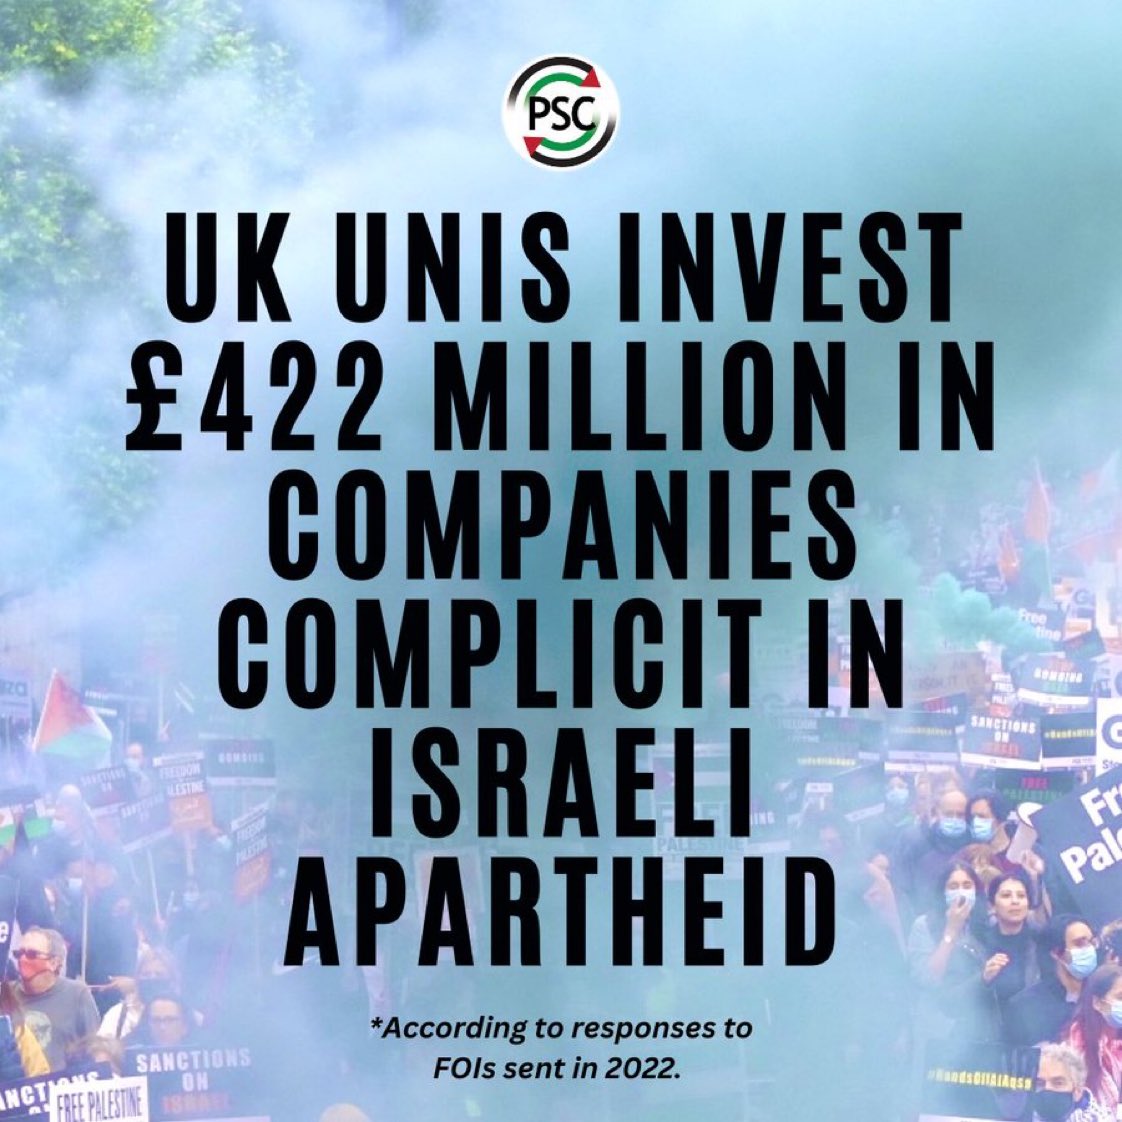 #英国 の大学は #イスラエル の不法軍事占領を支援する企業に推定4億2,200万ポンドを投資しています。

#イスラエル が #ガザ への残忍な攻撃を続ける中、#アパルトヘイト をキャンパスから追い出すことがこれまで以上に重要になったことはありません。
@PSCupdates 
#ApartheidOffCampus